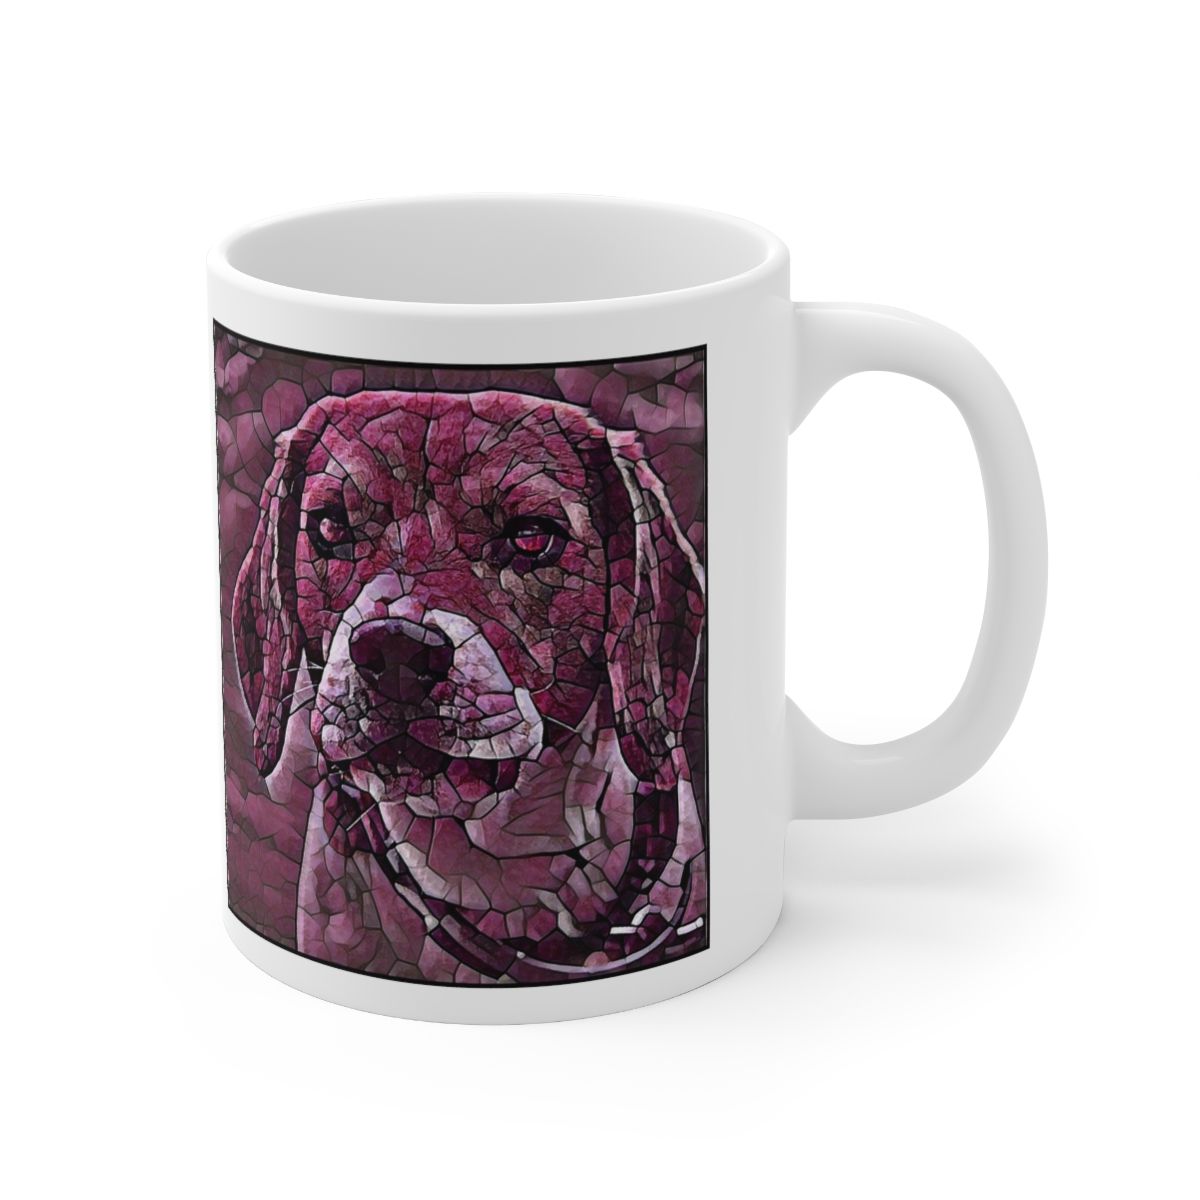 Picture of Beagle-Plump Wine Mug